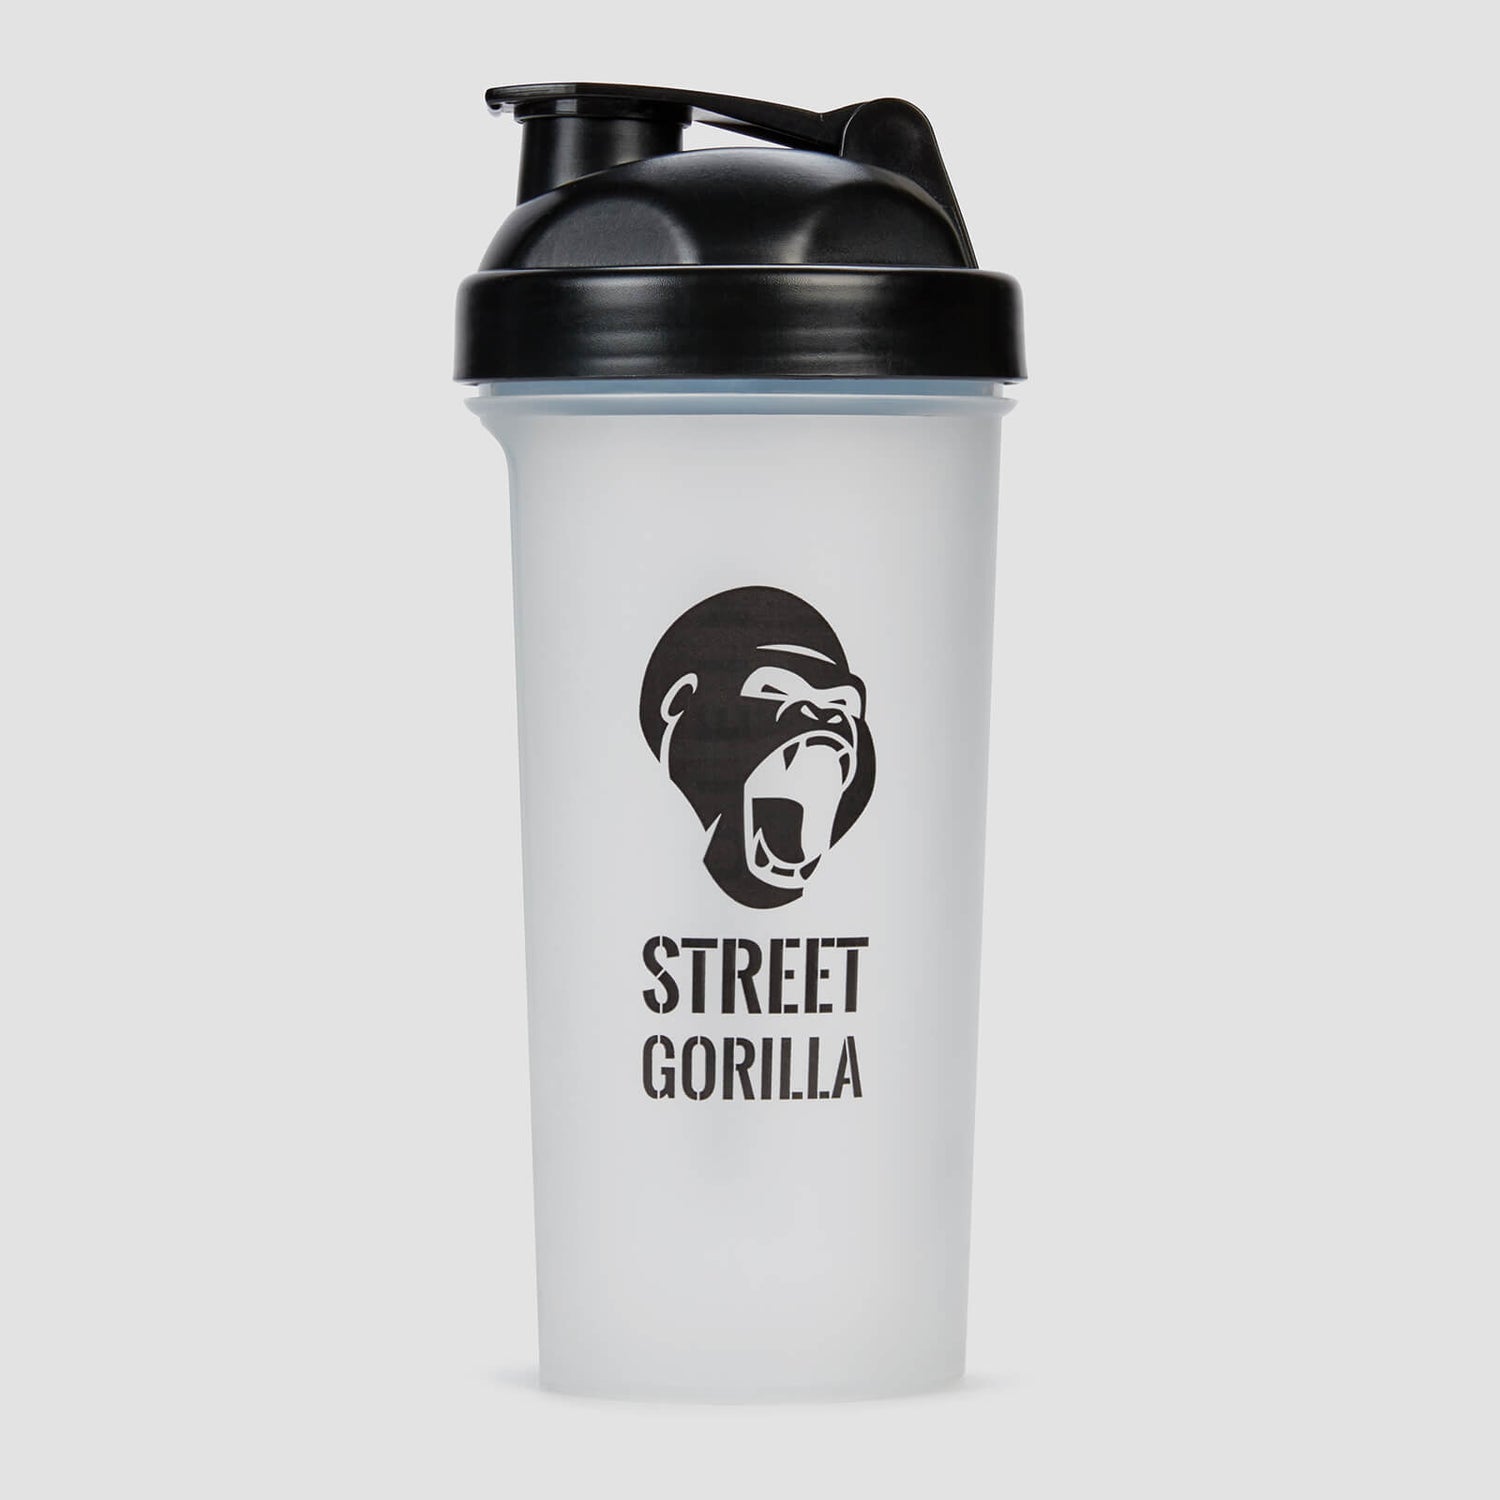 Myprotein x Street Gorilla - Shaker in Edizione Limitata